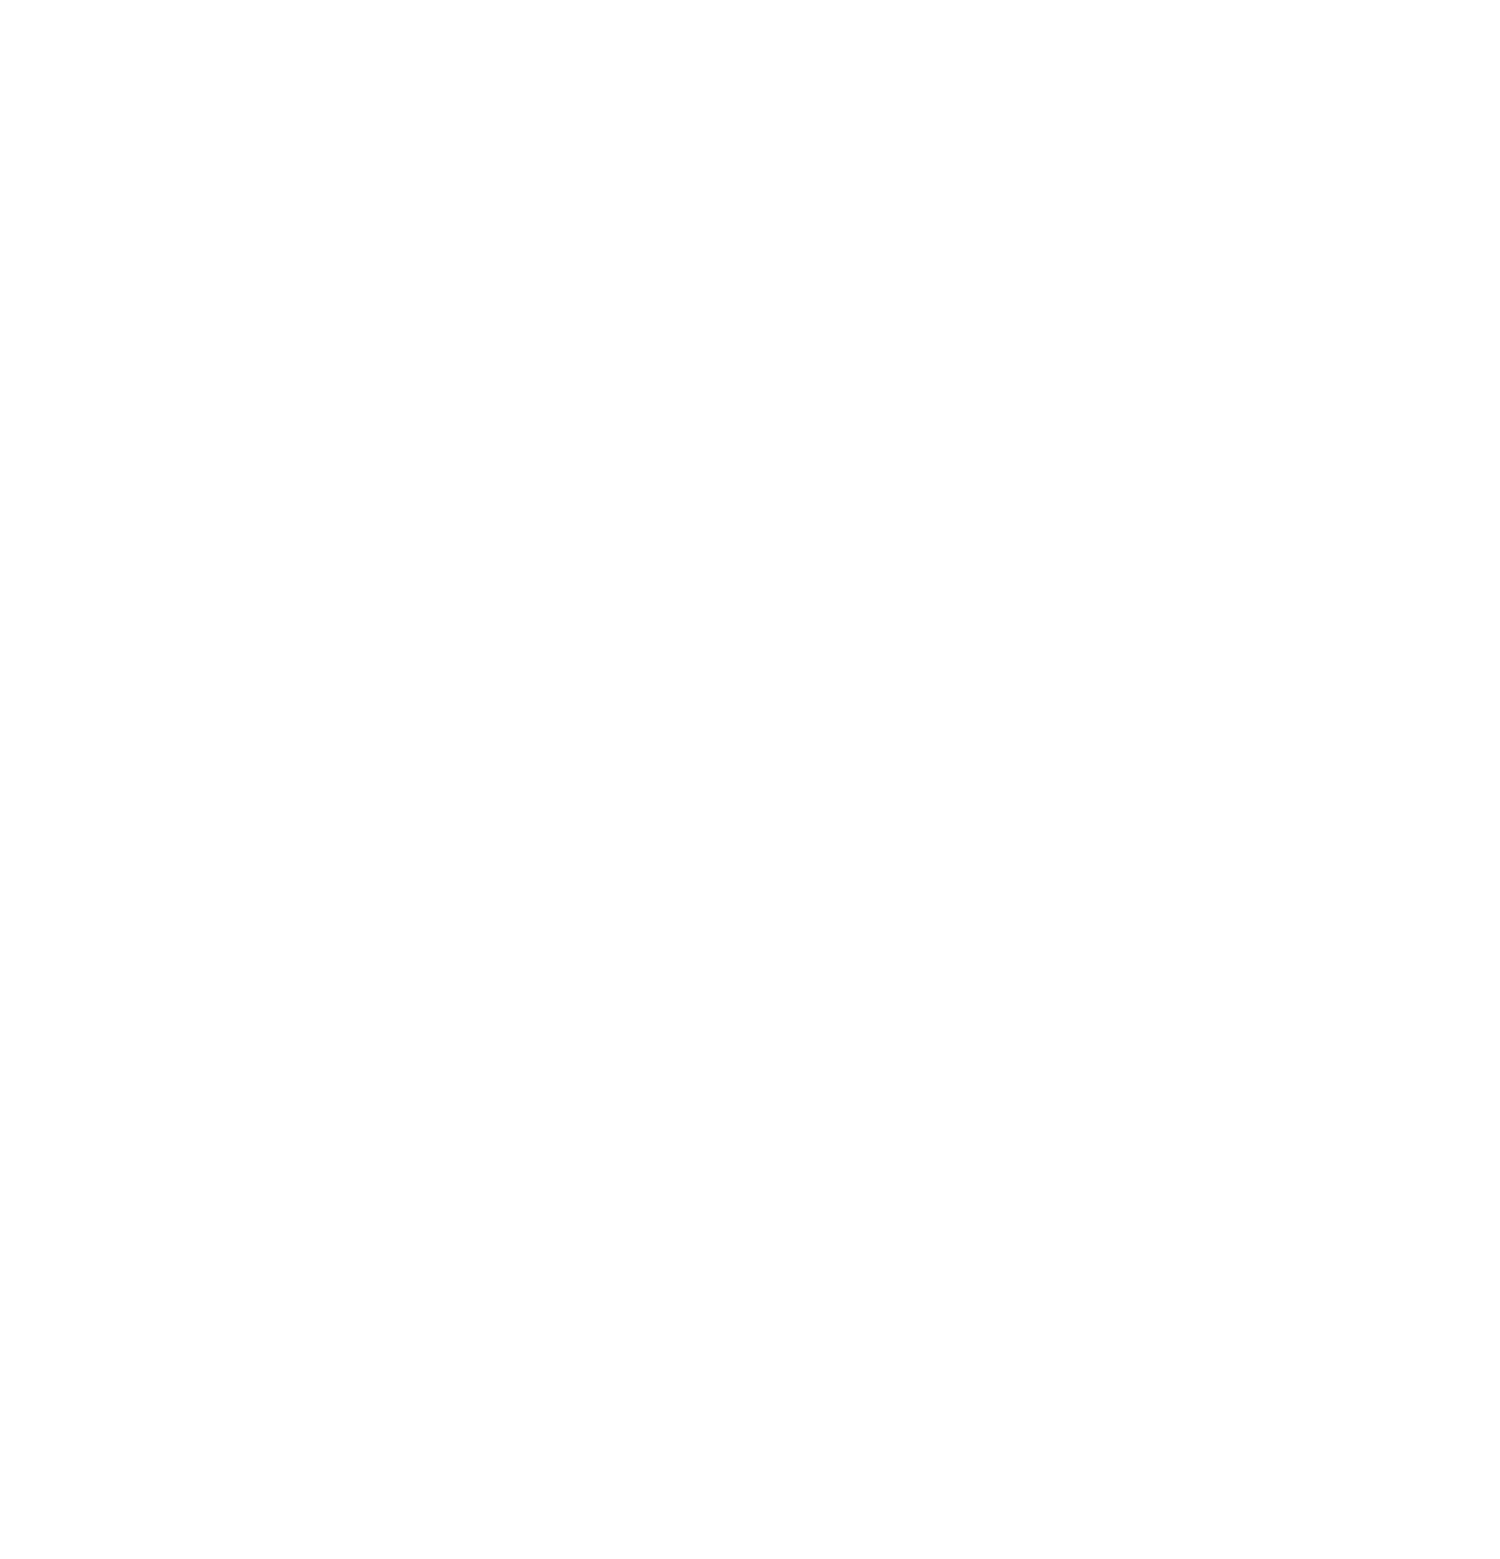 SARA WOLFF